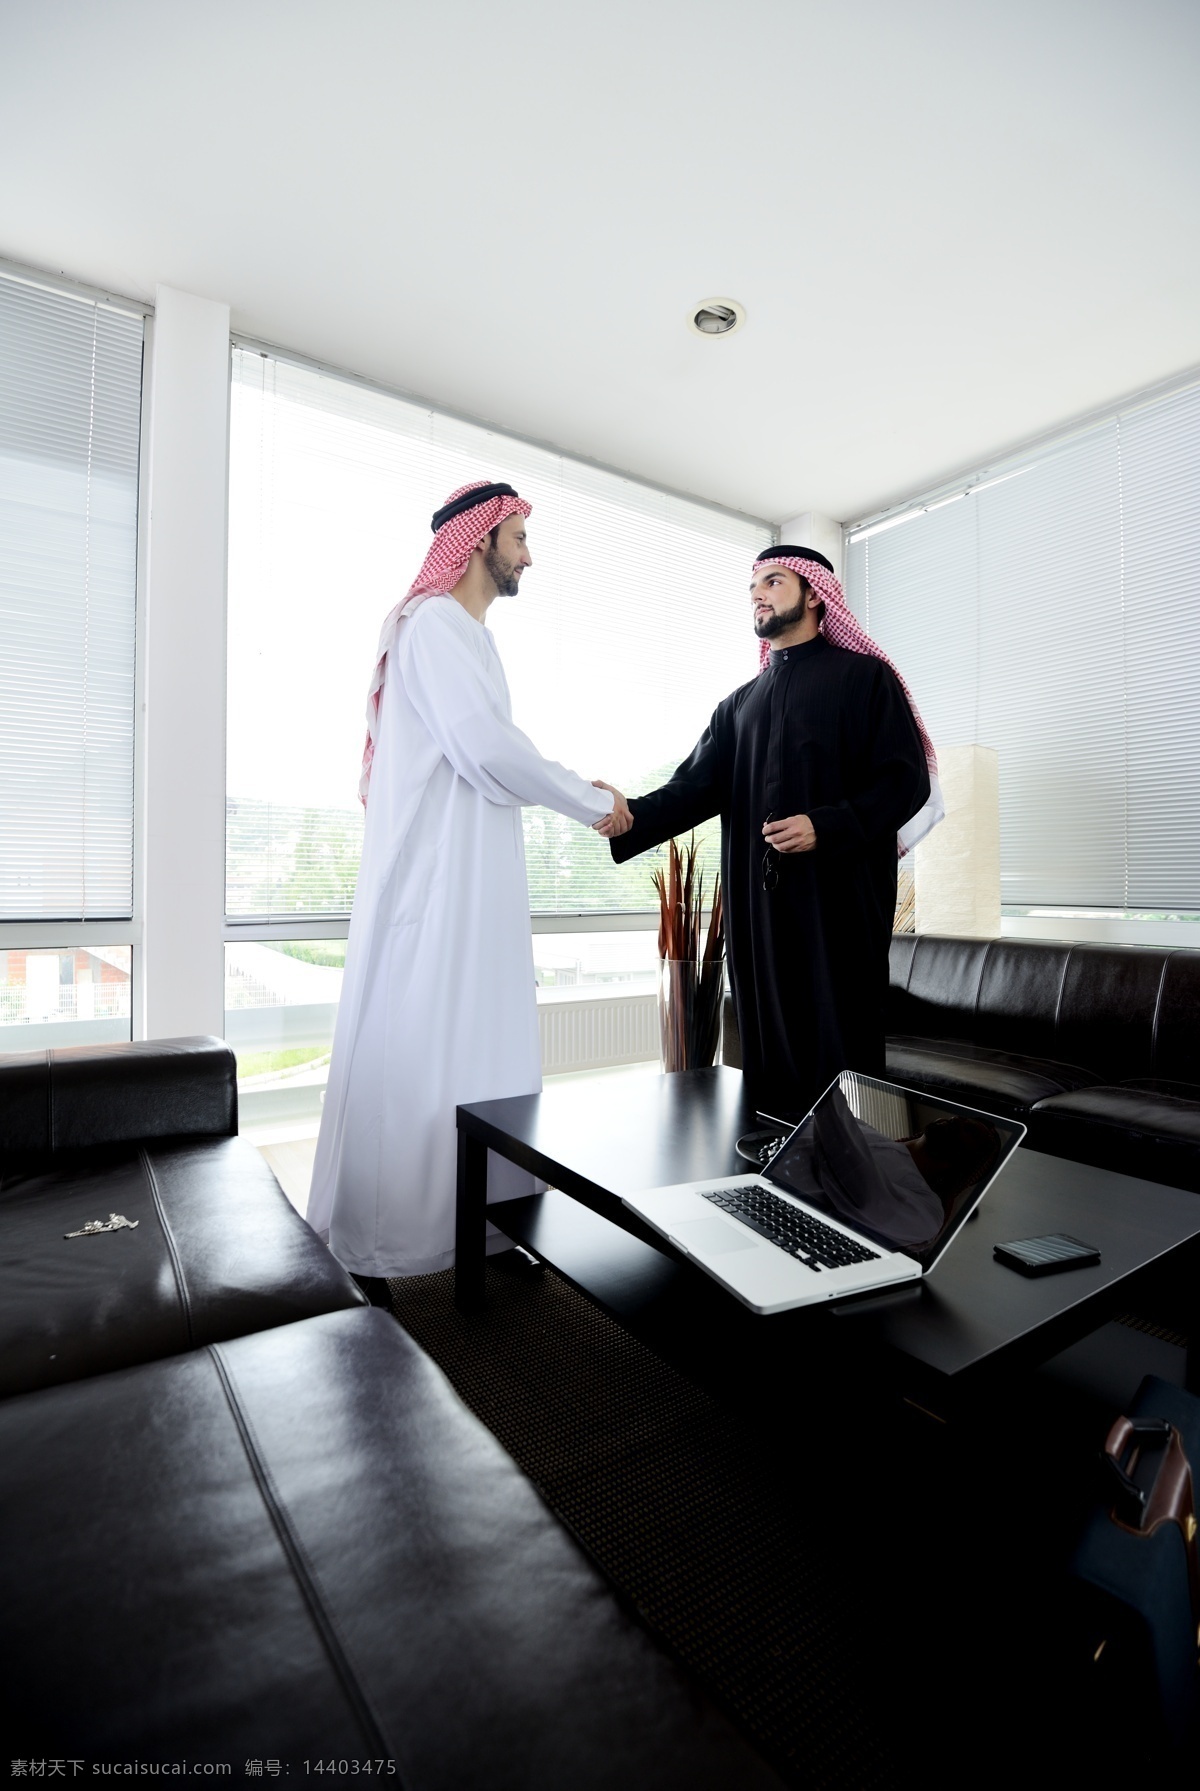 办公室 里 两个 握手 阿拉伯 男人 两个握手 沙发 茶几 笔记本 人物 生活人物 人物图片